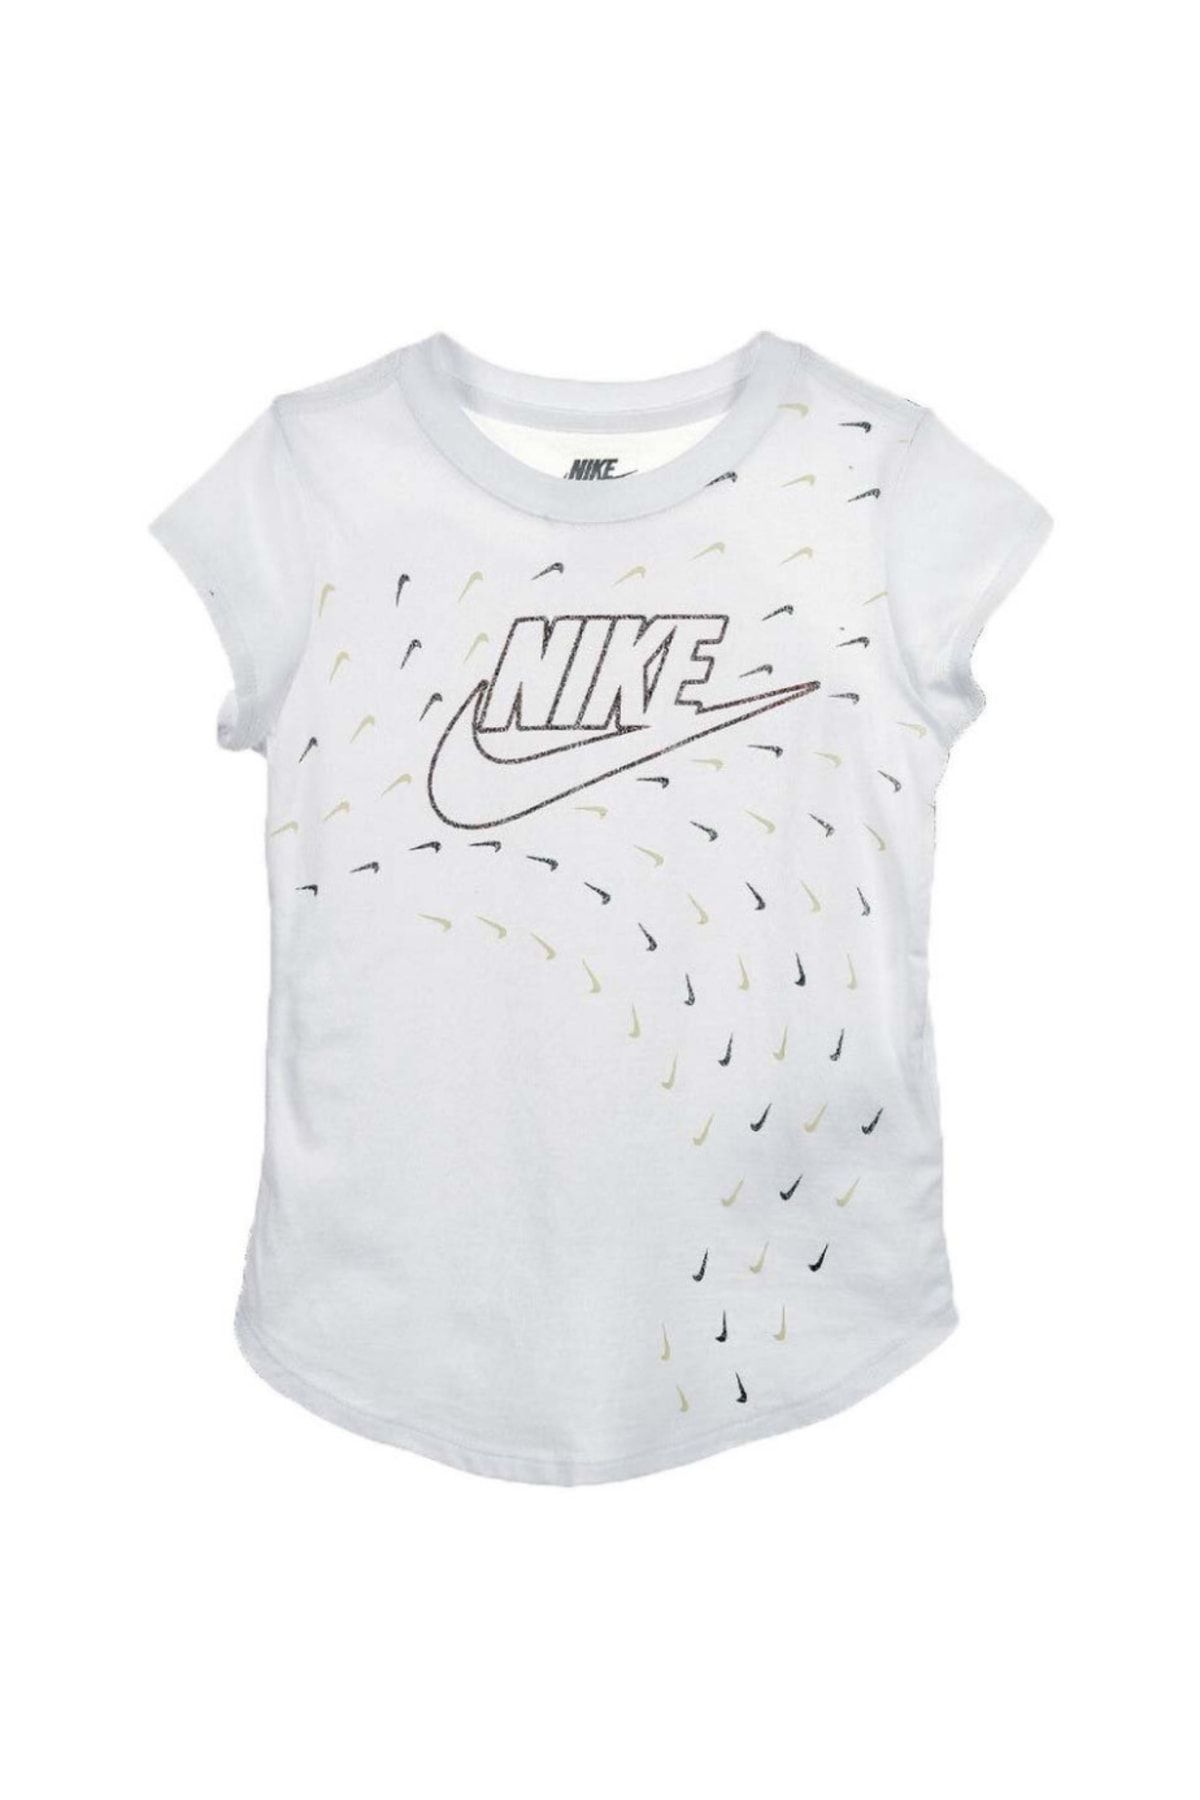 Nike Futura Swoosh Glıde Kız Çocuk Tişört 36j070-001